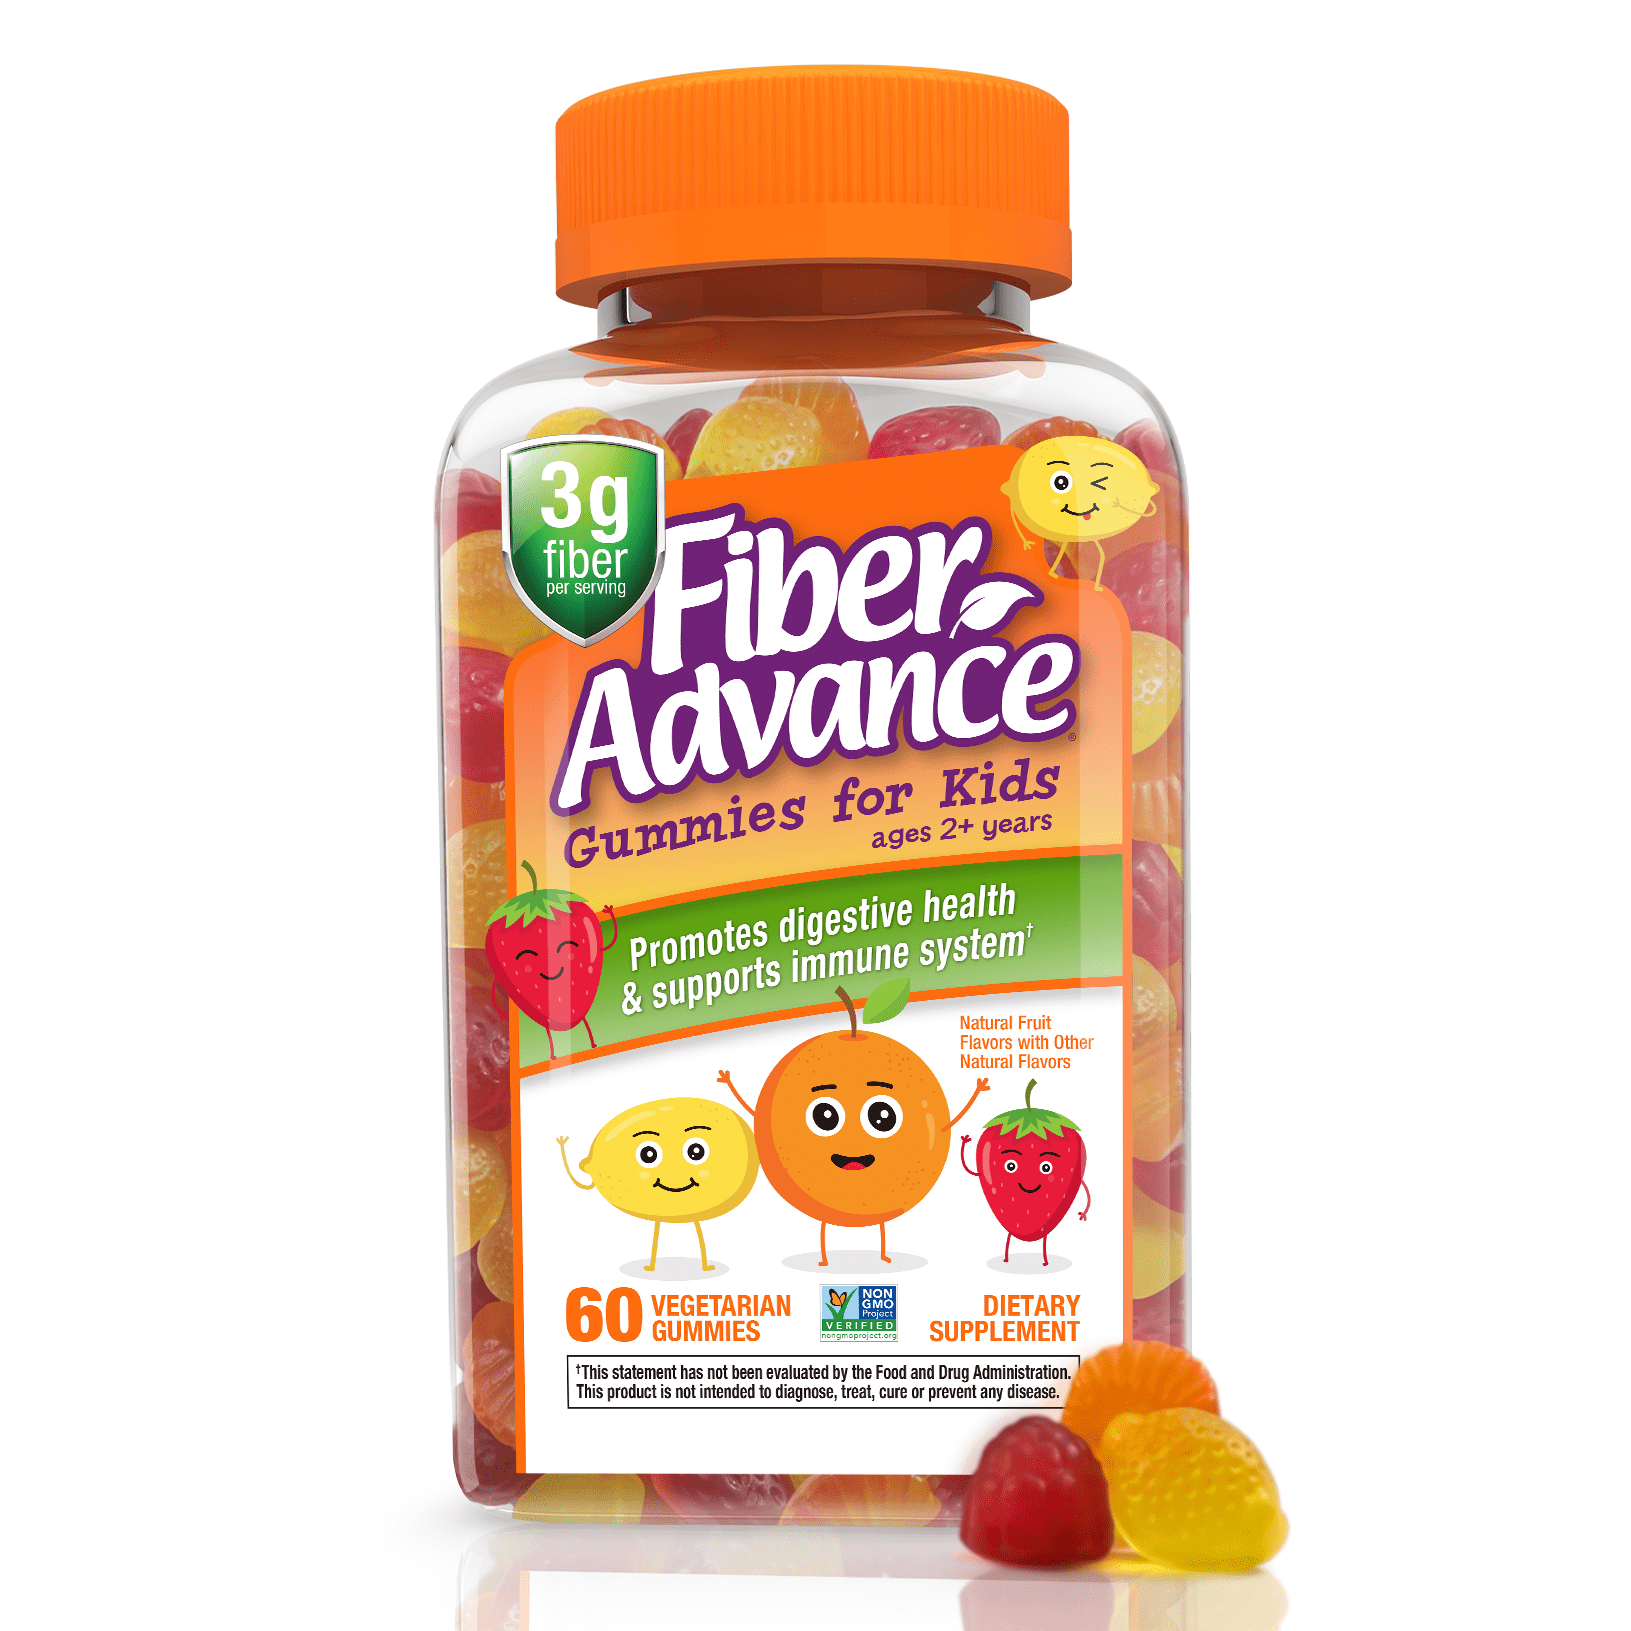 fiber-advance-kids-digestive-health-fiber-supplement-gummies-natural